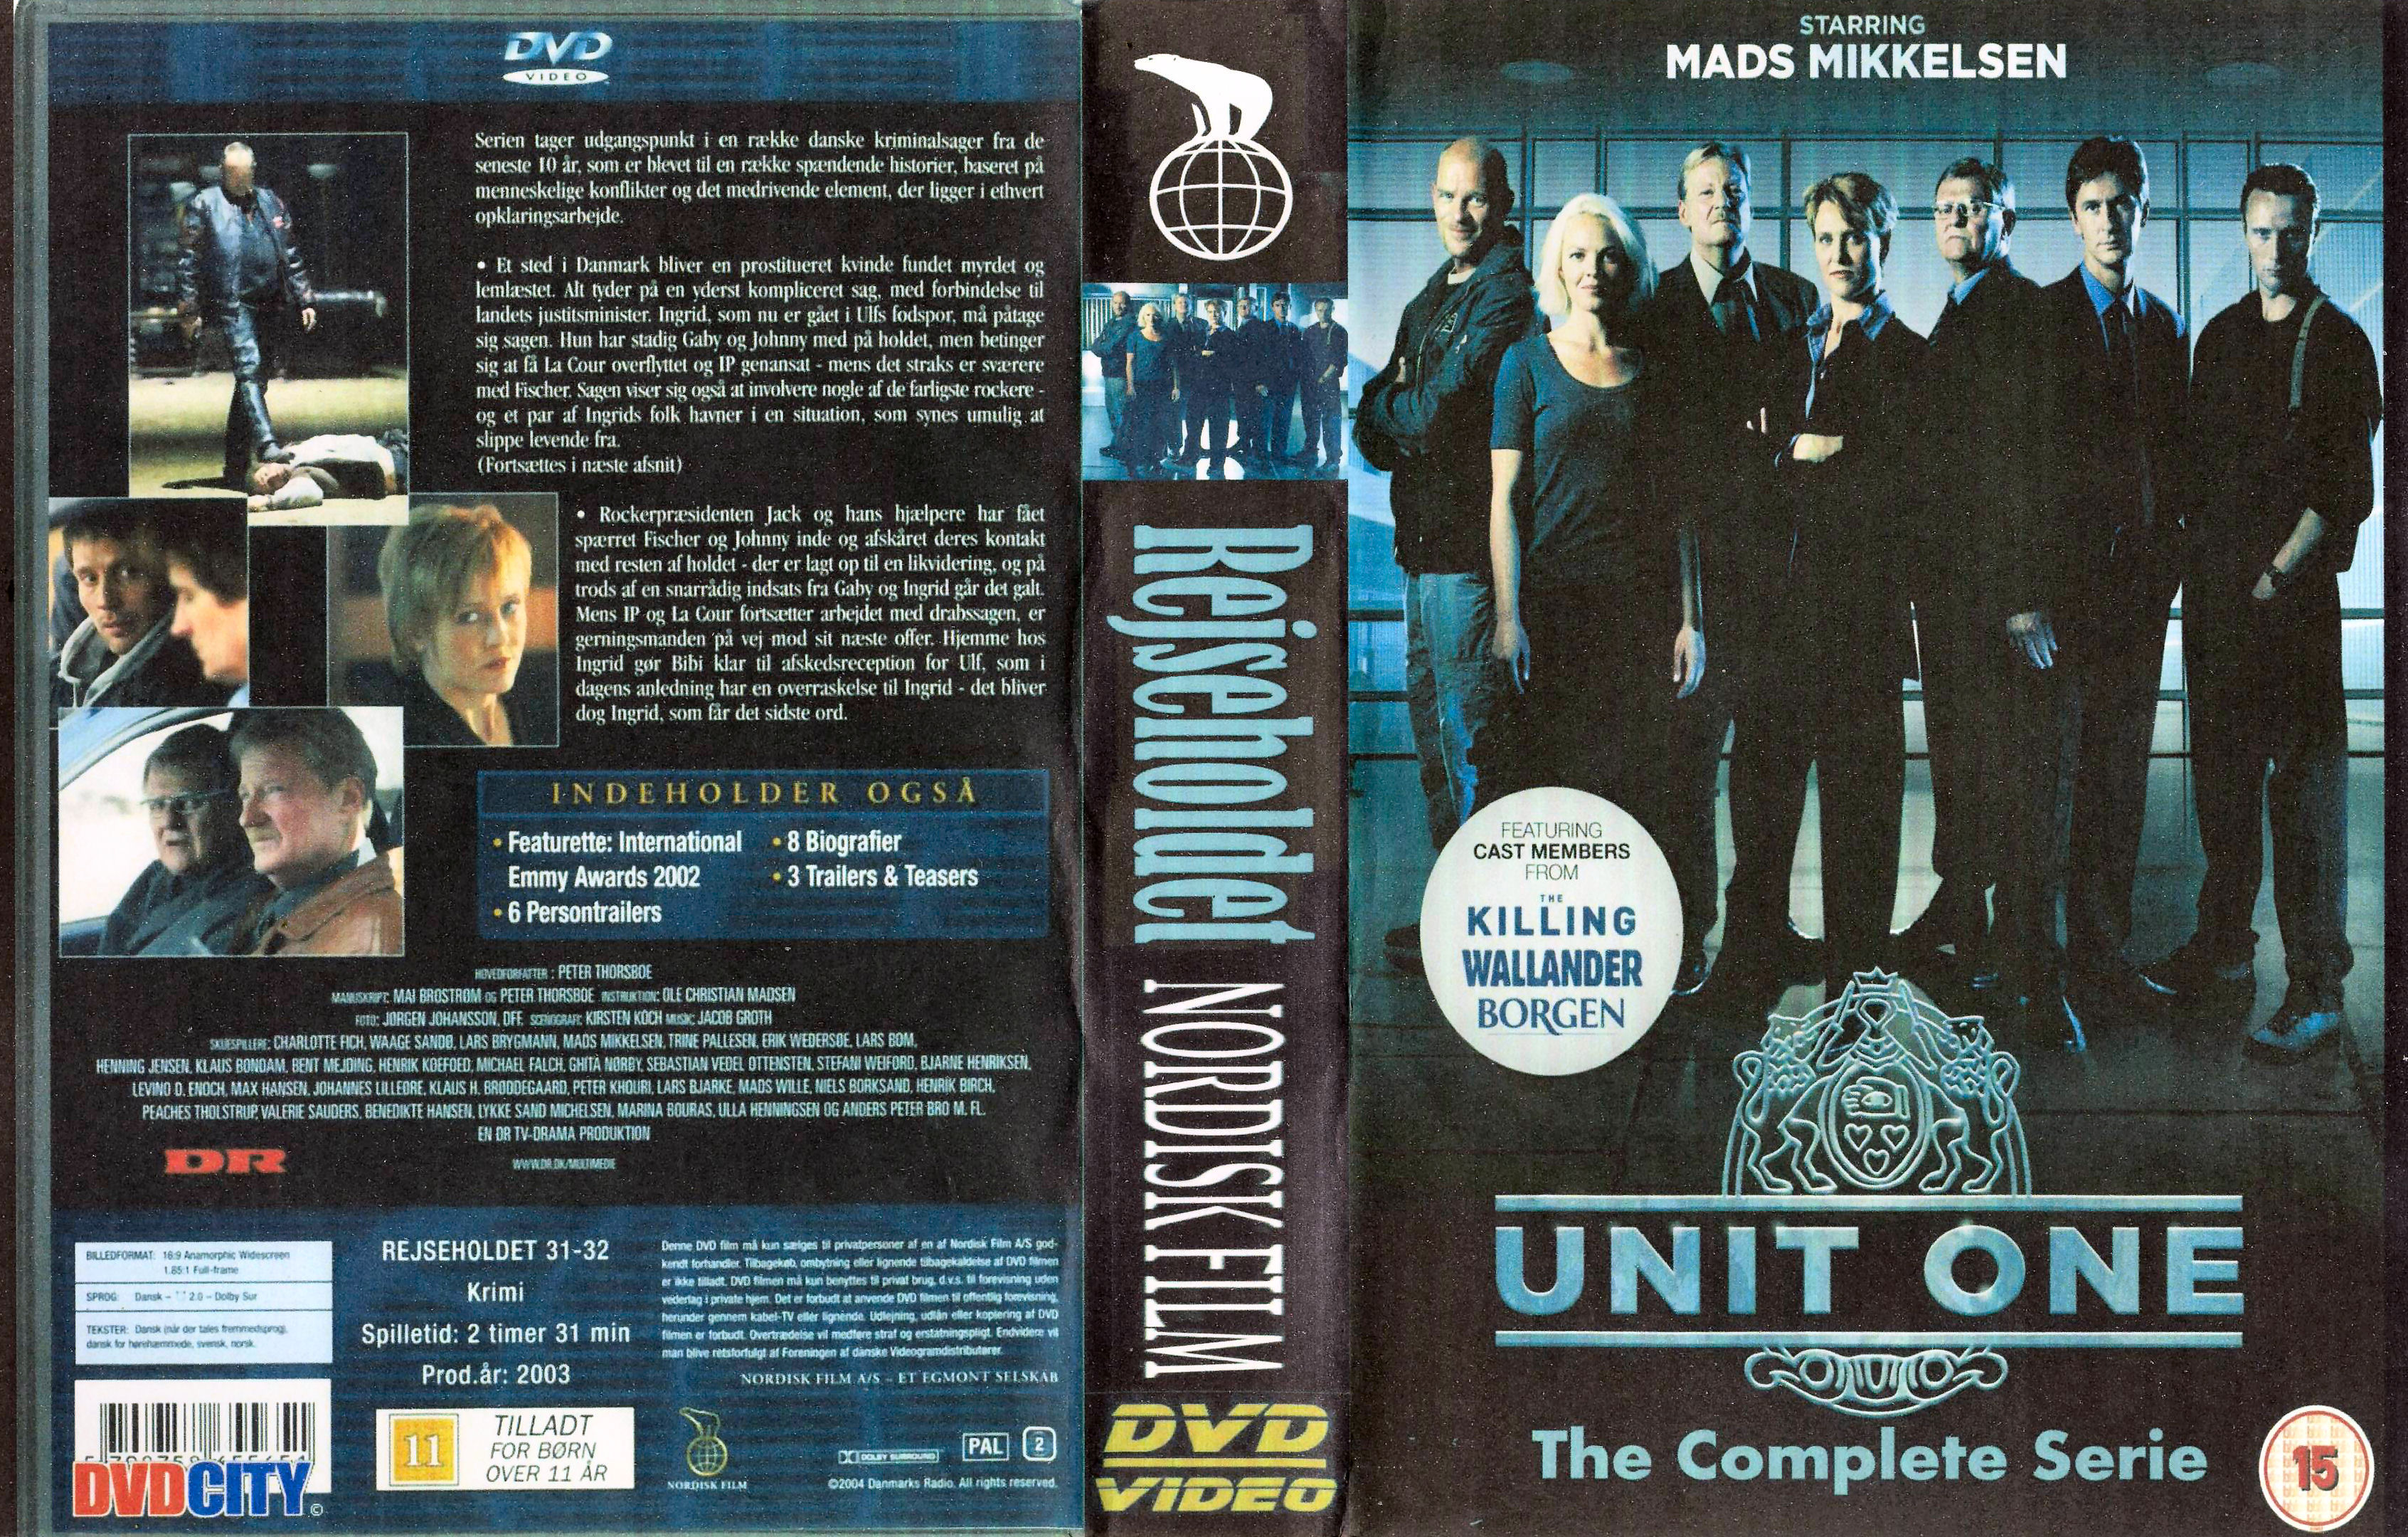 Rejseholdet (Unit One) dvd 6 van 11